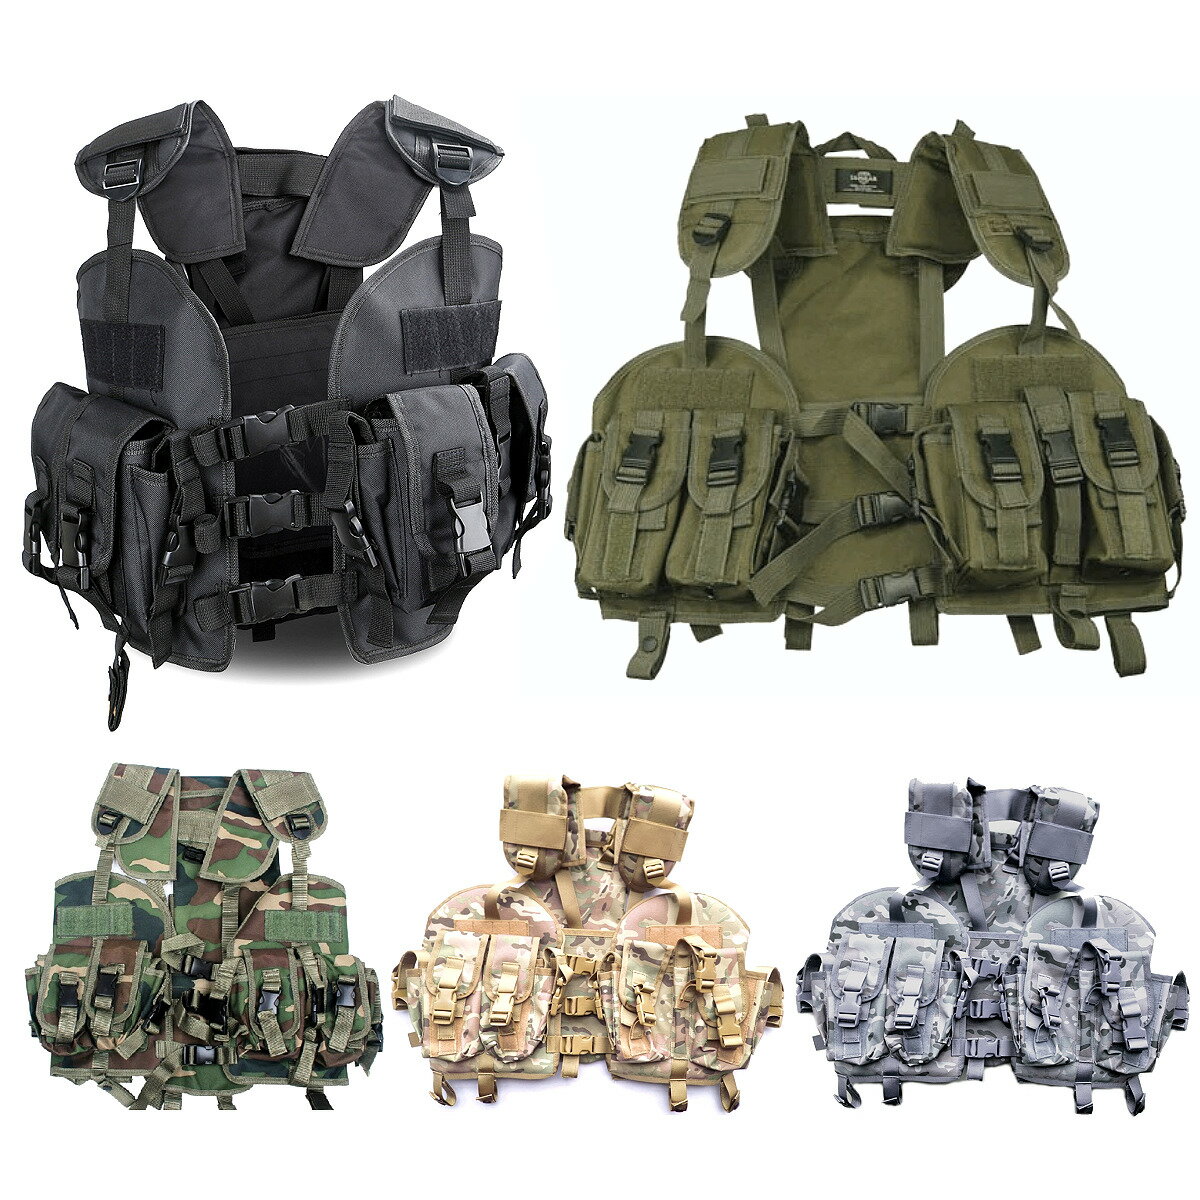 全5色! フリーサイズ [Men s Water Bag Military Tactical Vest] メンズ ウォーターバッグミリタリータクティカルベスト! アーミーベスト コンバット ボディアーマー マガジンポーチ カモフラ…